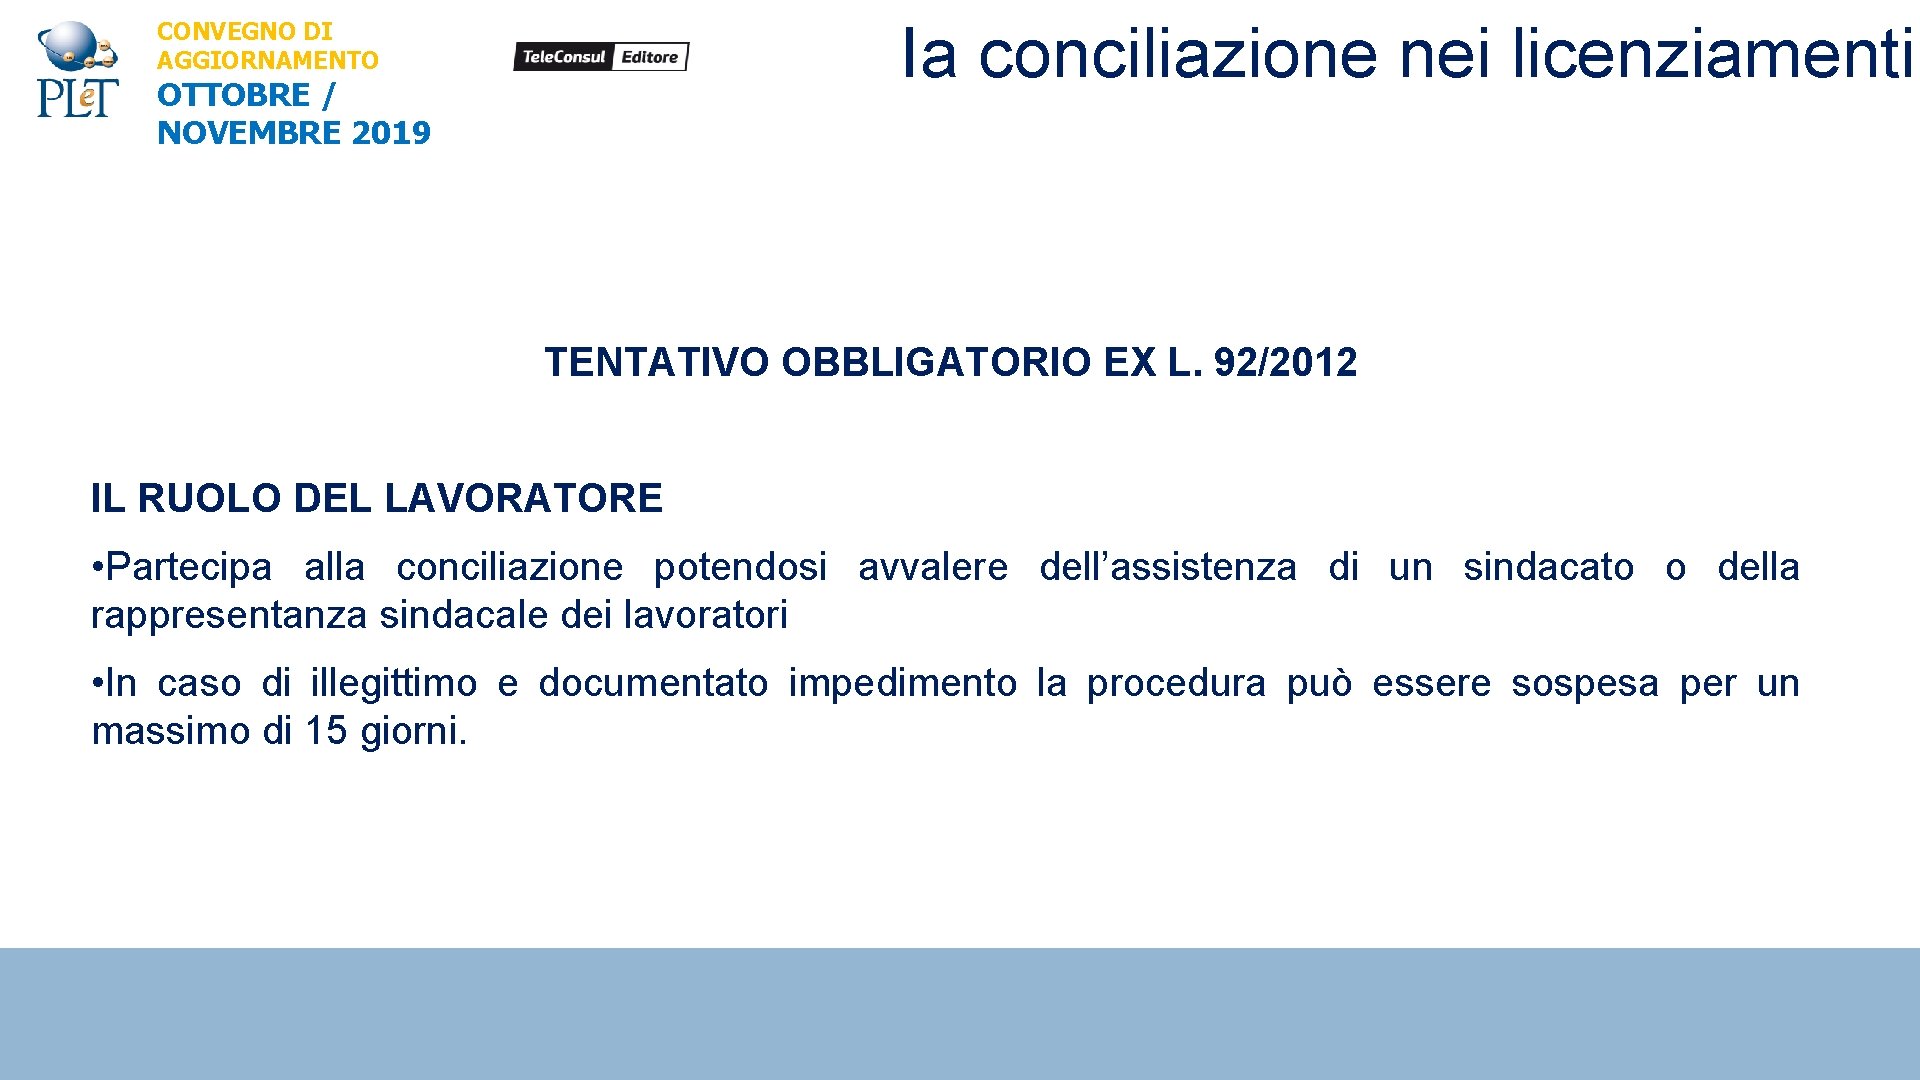 Ia conciliazione nei licenziamenti CONVEGNO DI AGGIORNAMENTO OTTOBRE / NOVEMBRE 2019 TENTATIVO OBBLIGATORIO EX